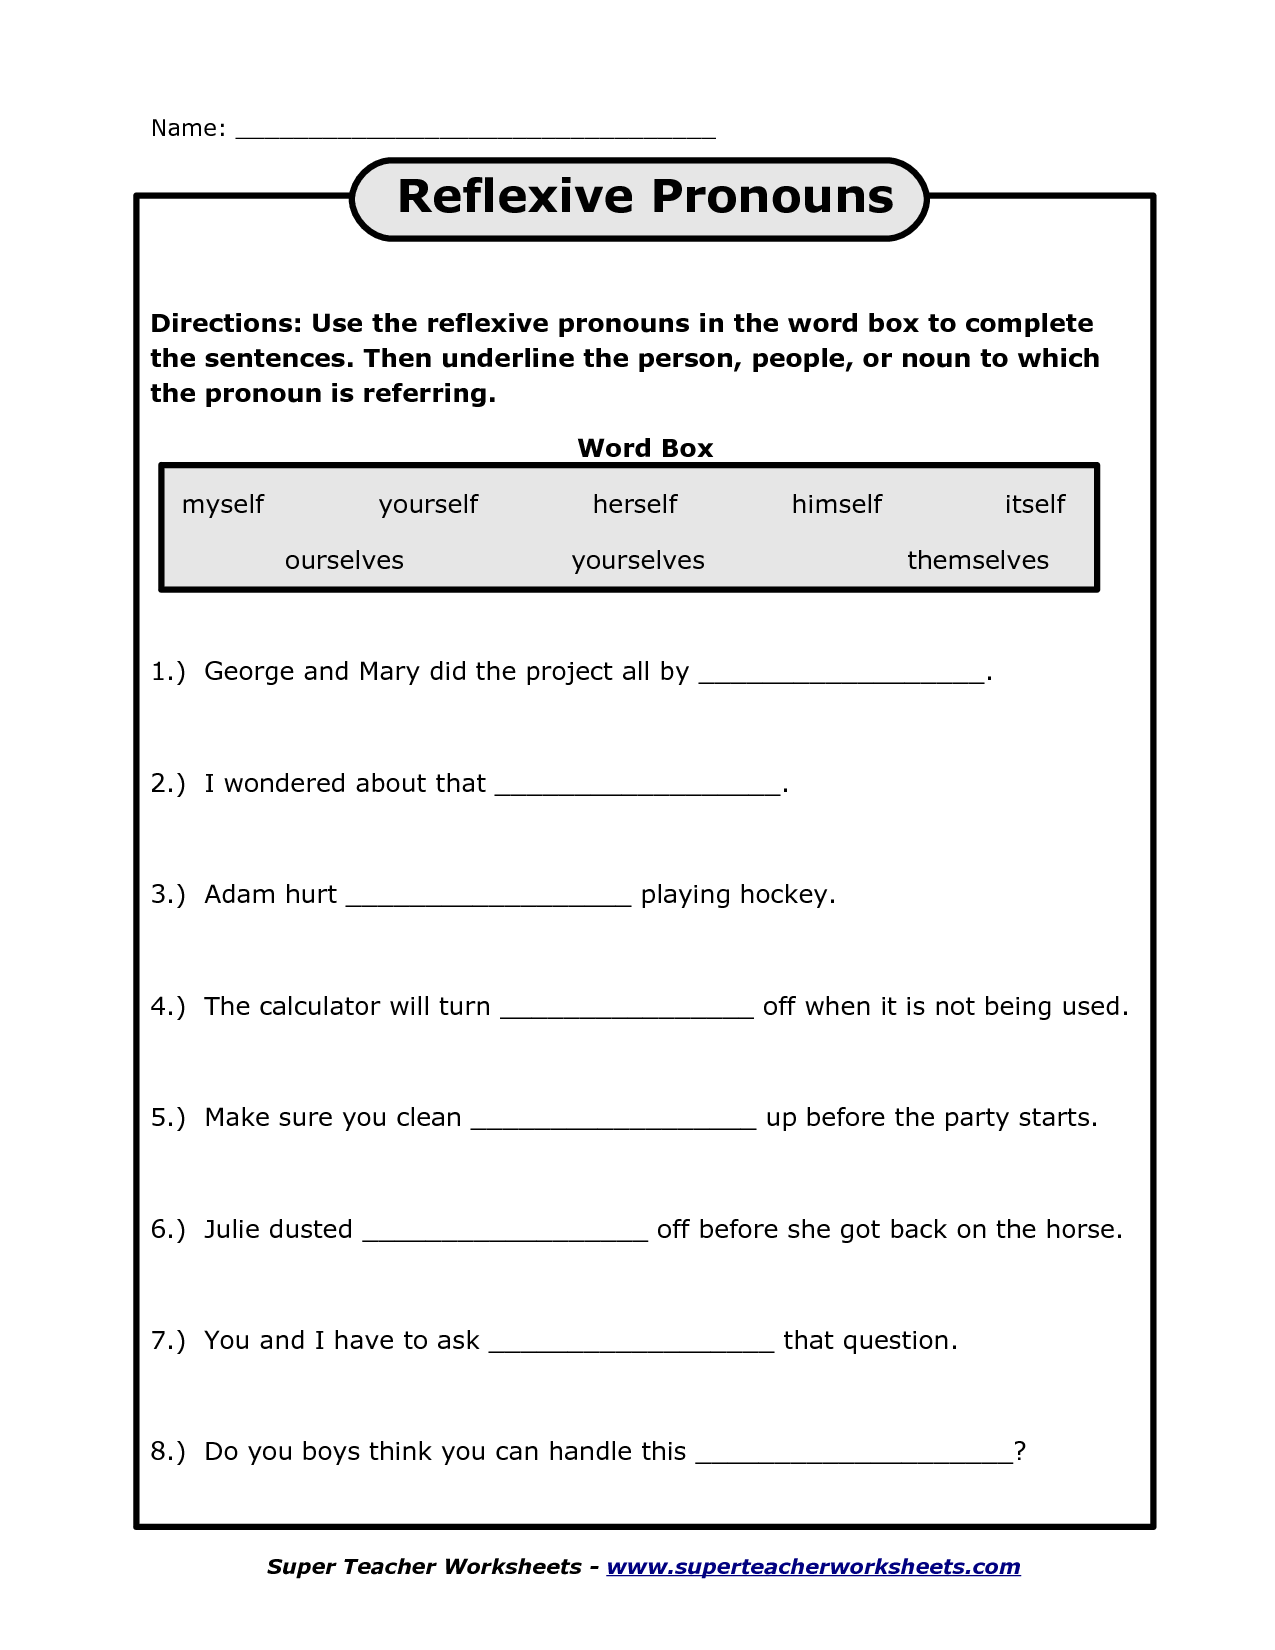 reflexive-pronouns-exercises-esl-grammar-worksheet